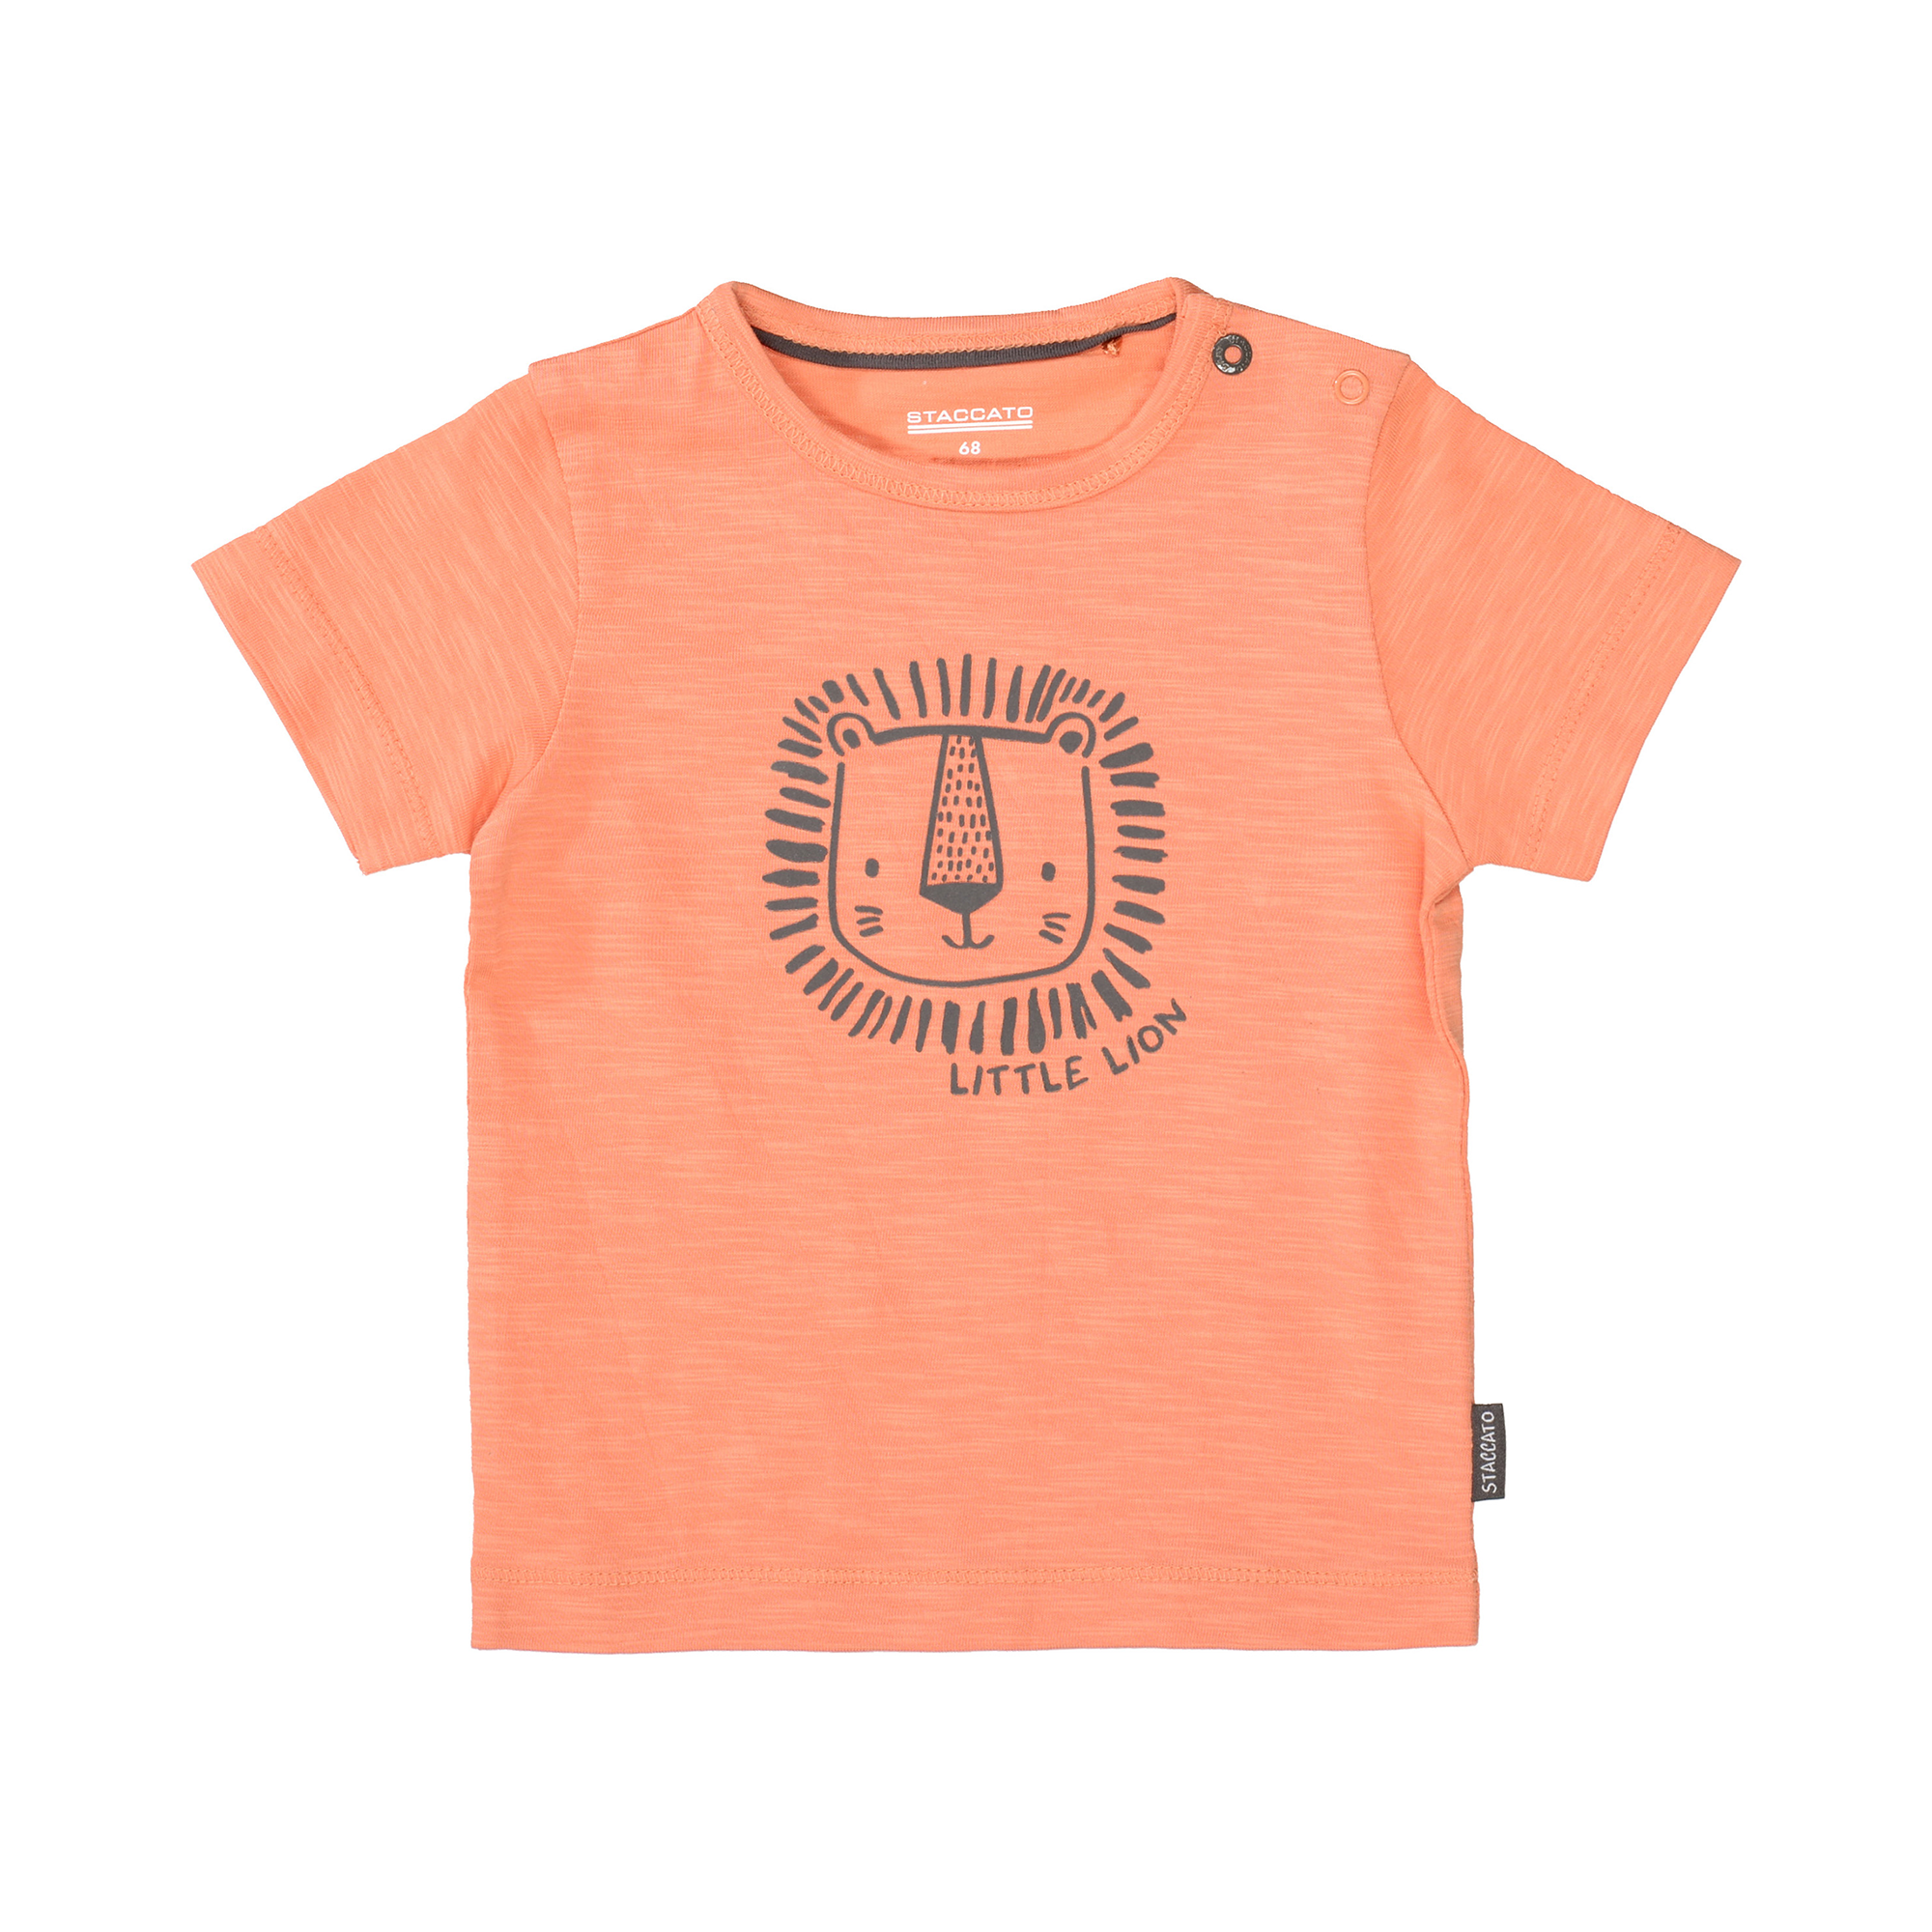 T-Shirt Little Lion STACCATO Orange M2000585459802 1